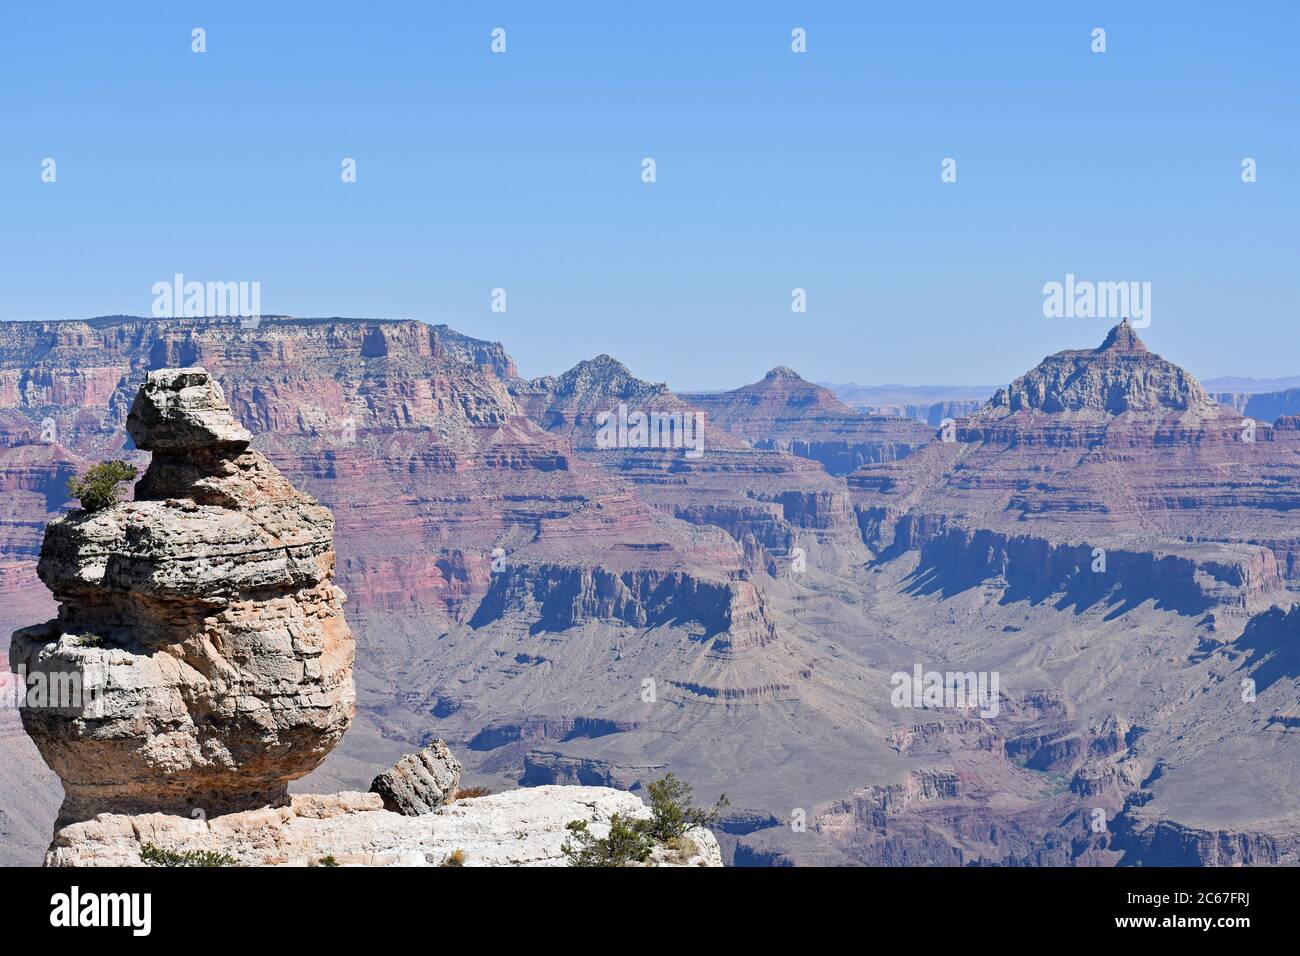 Ein Ausziehsofa entlang Desert View Drive, um die Formation zu sehen: Ente auf einem Felsen. Der Grand Canyon ist im Hintergrund zu sehen. Blauer Himmel und roter Fels Stockfoto